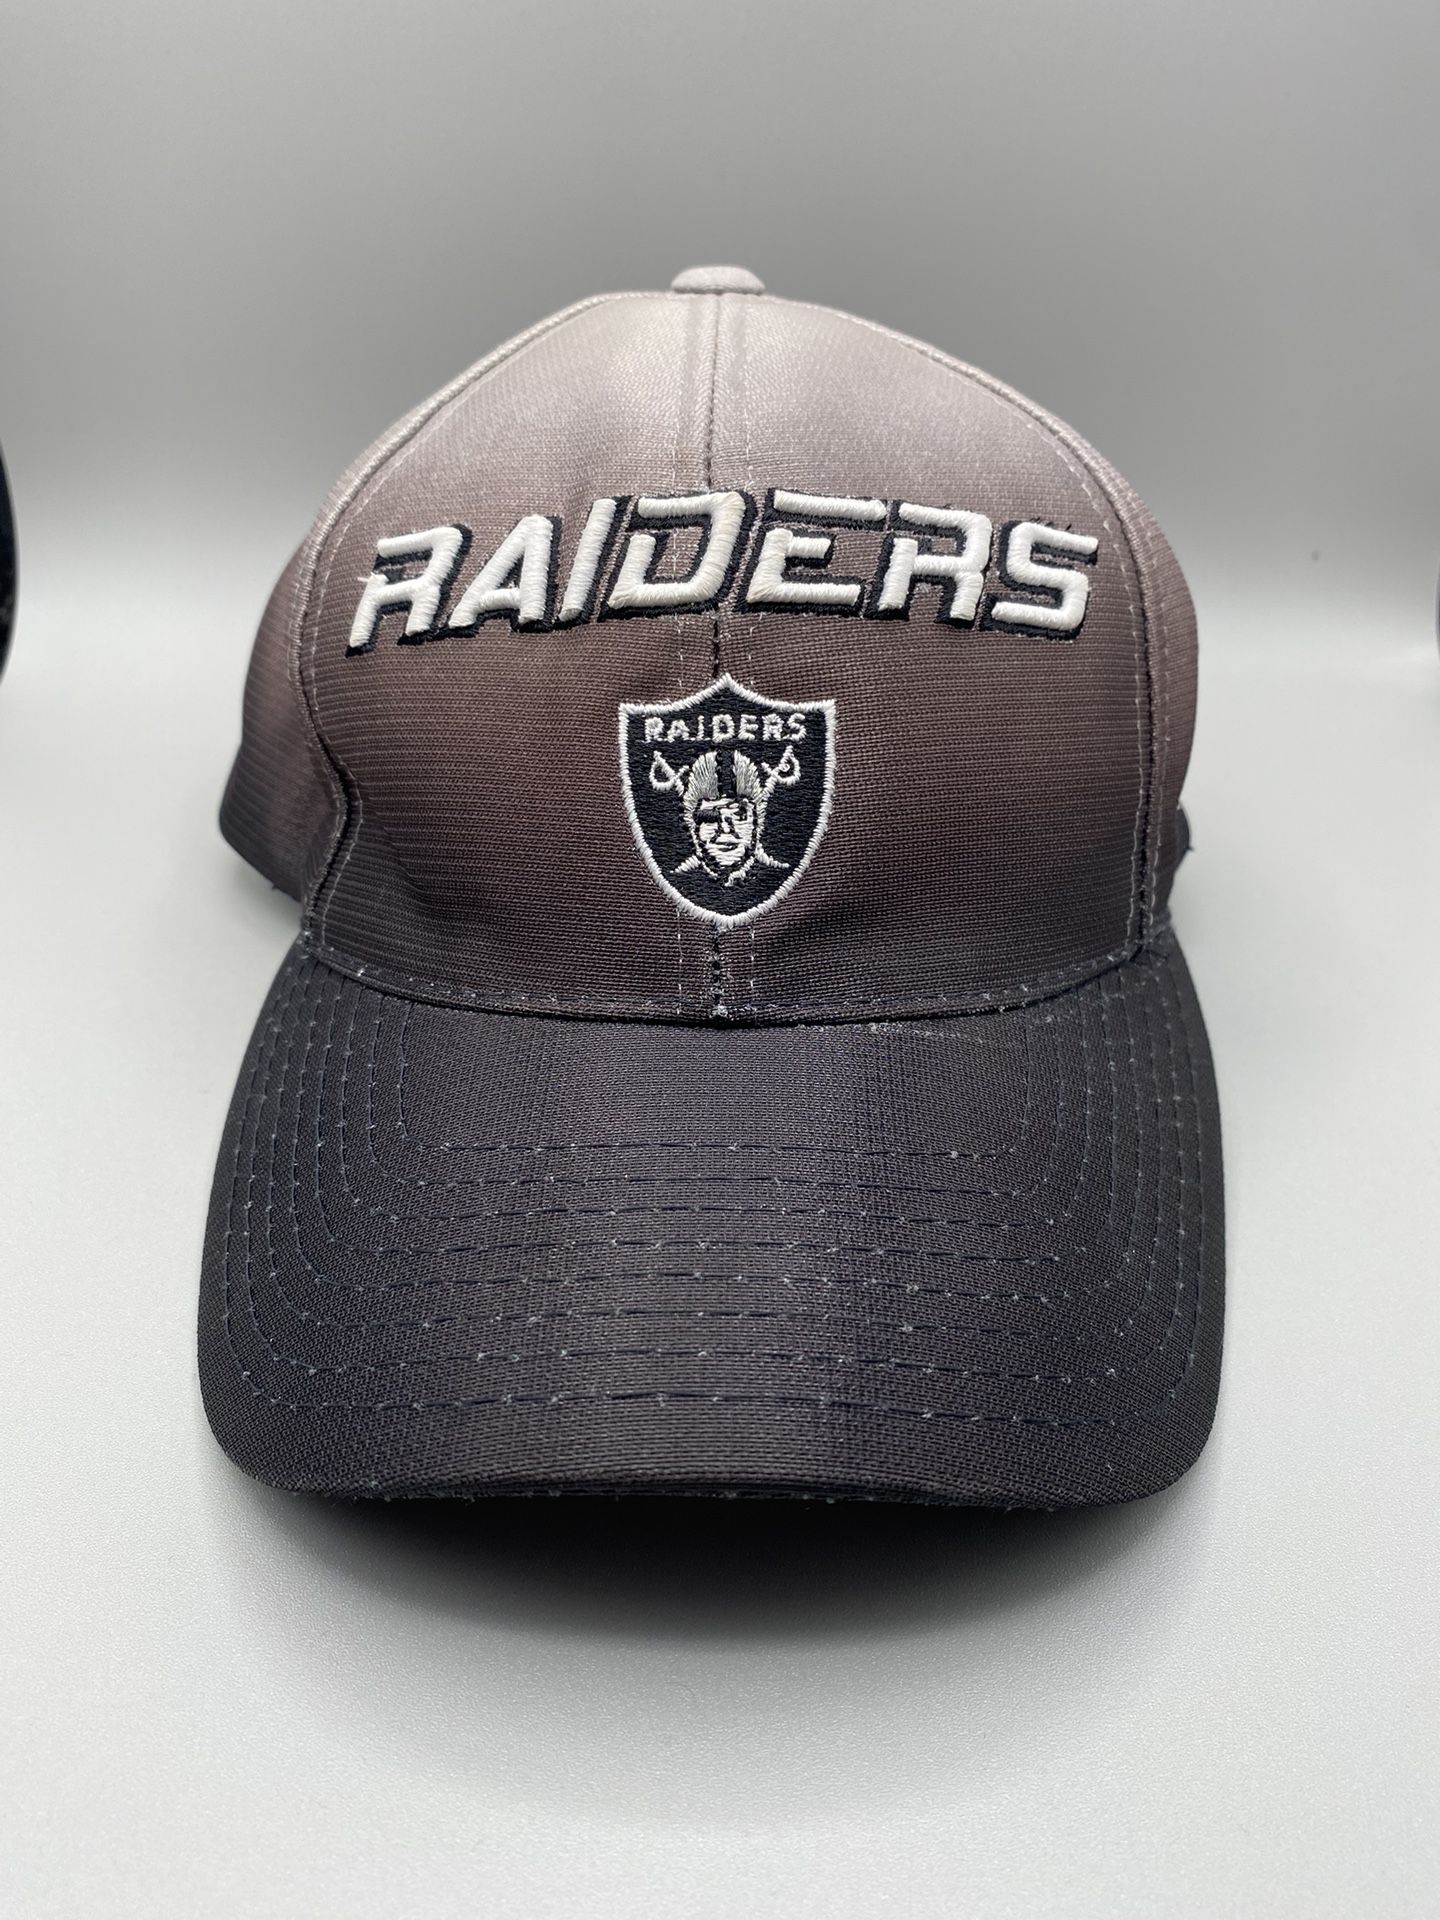 NFL Pro Line / Puma - RAIDERS Hat - Hook & Loop adjustable